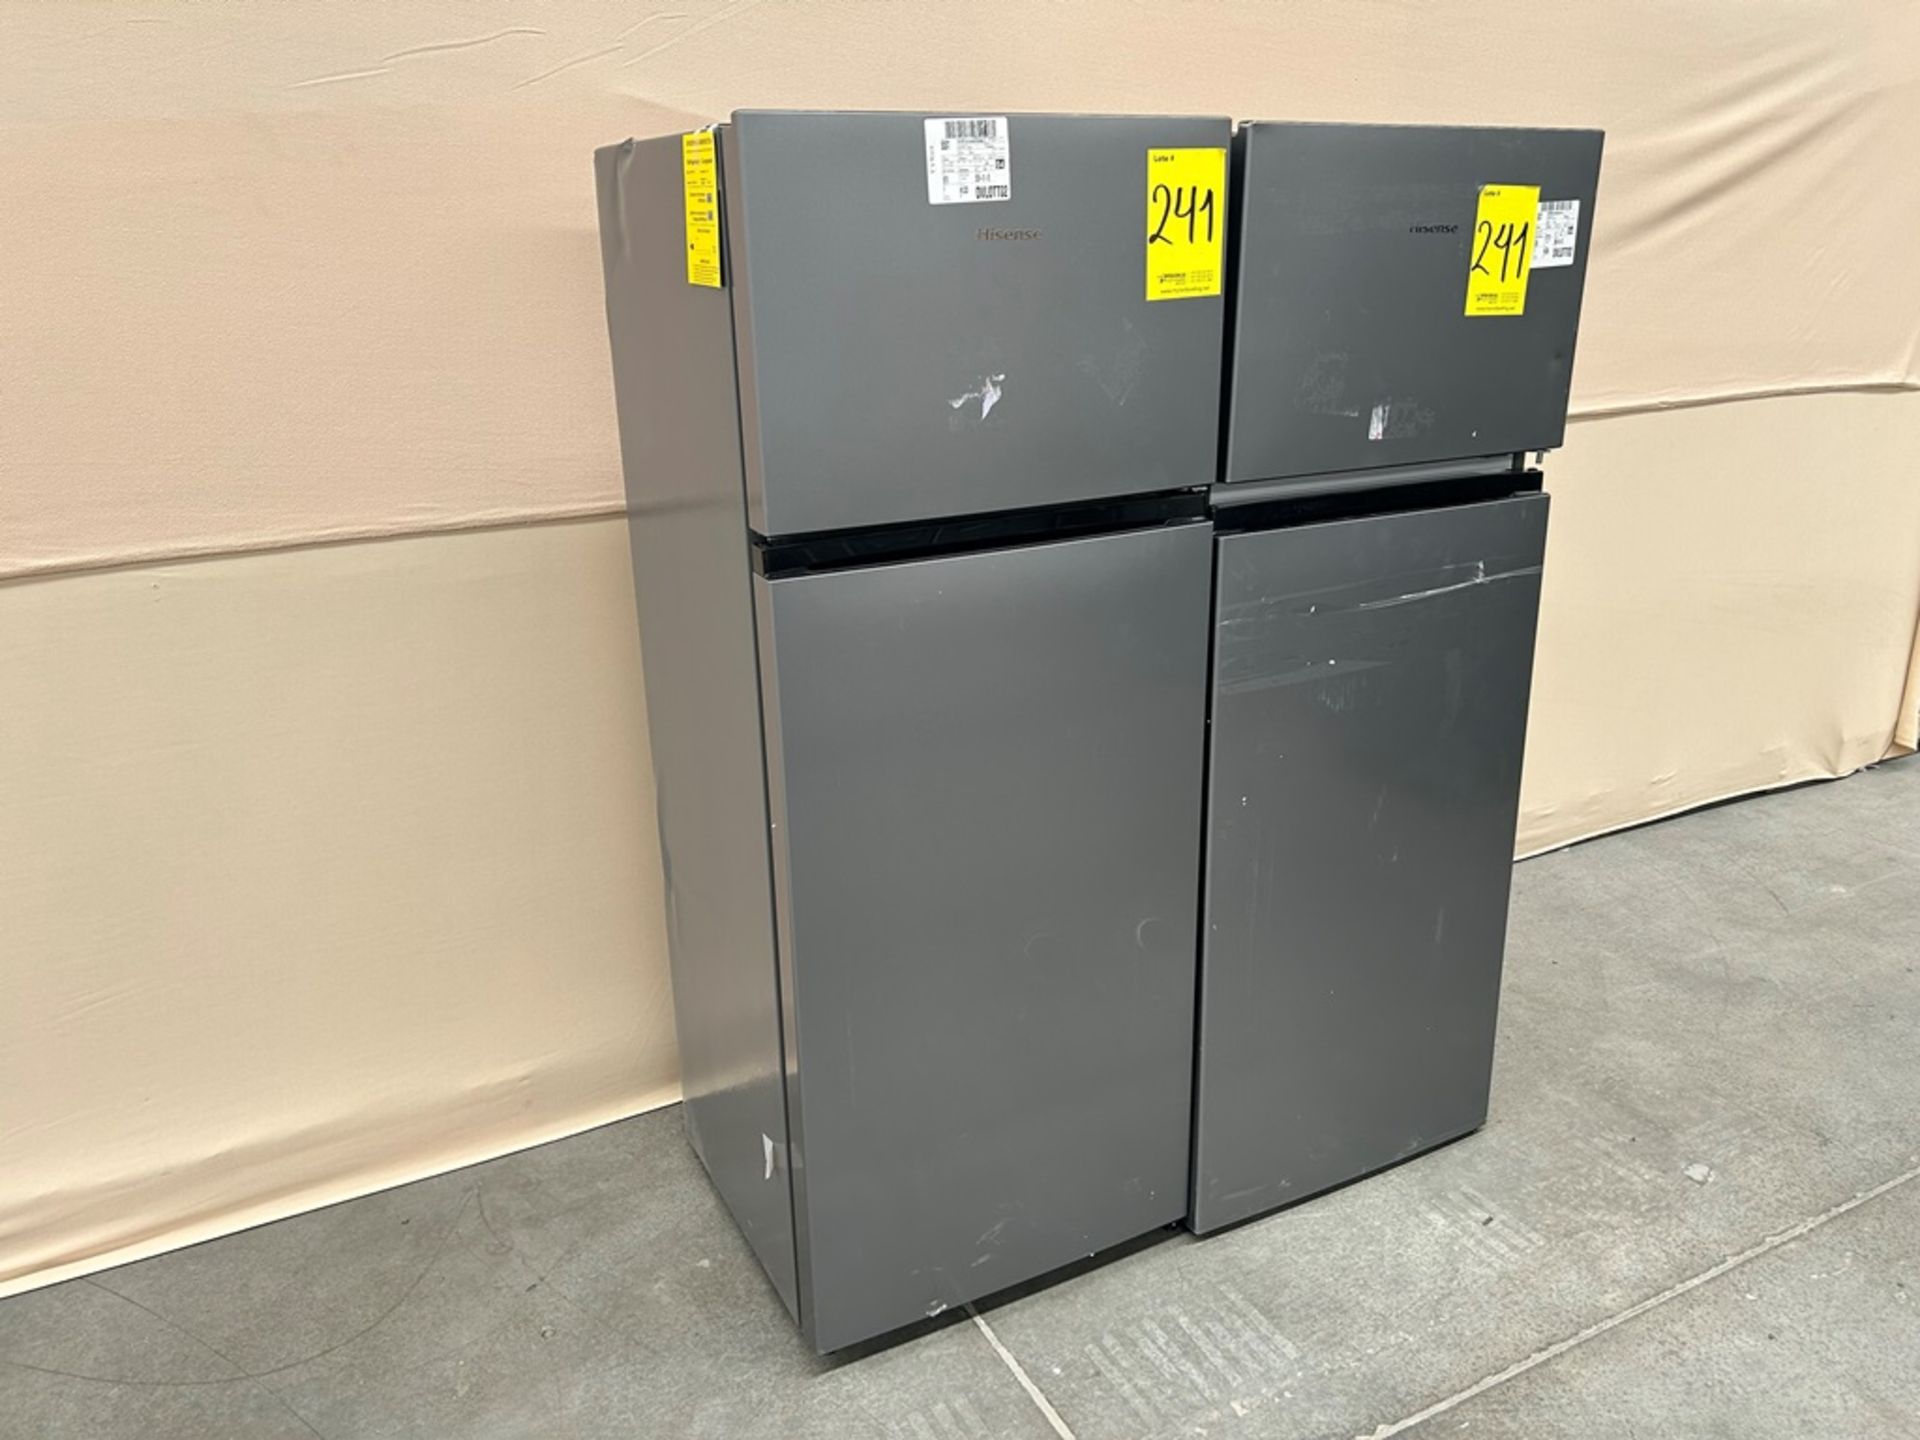 Lote de 2 refrigeradores contiene: Refrigerador Marca HISENSE, Modelo RT80D6AGX, Serie 20422, Color - Image 2 of 7